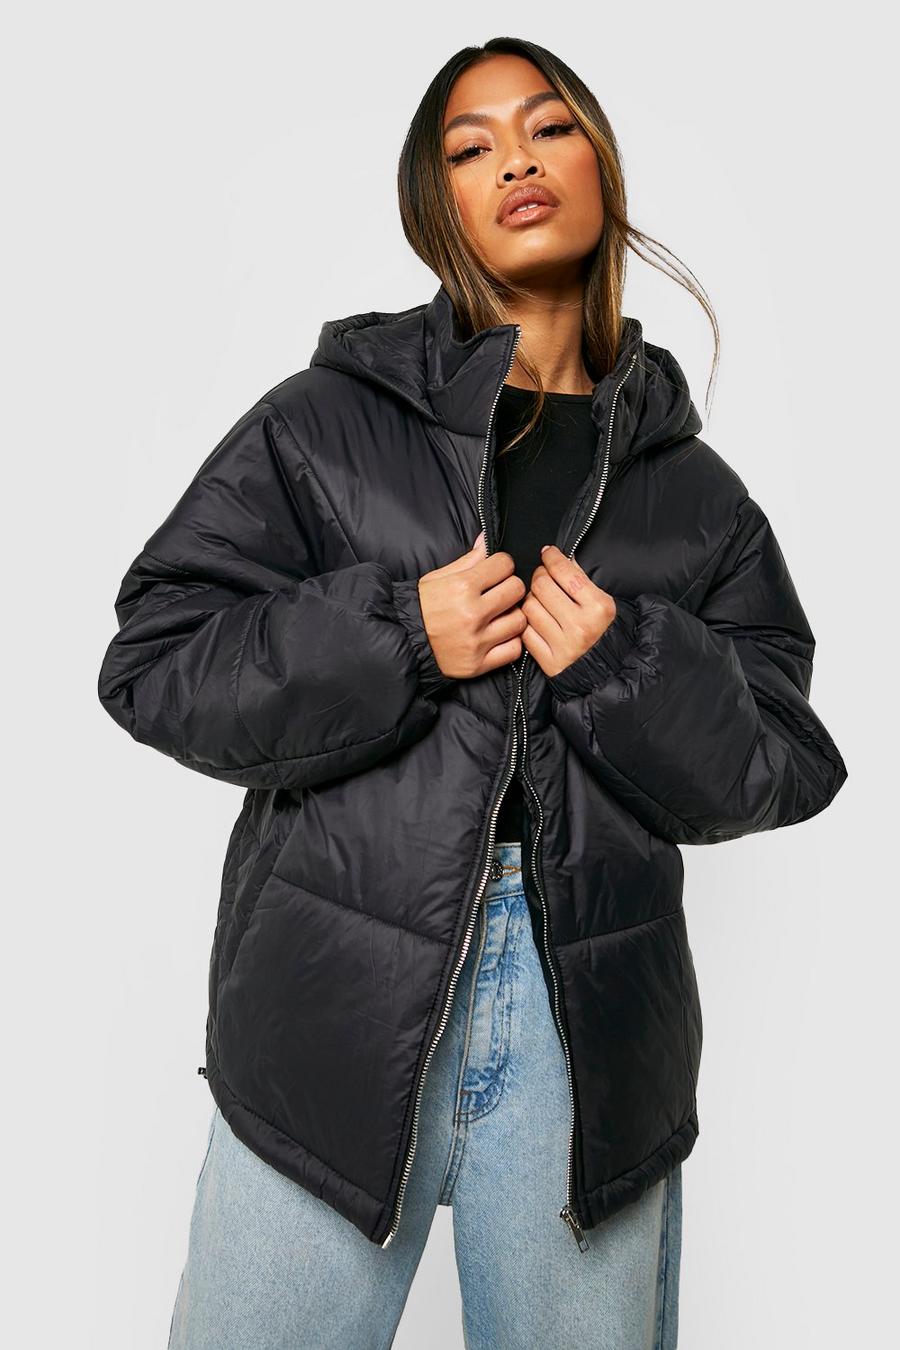 Girls Black Puffer Jacket For Sale, Save 47% | jlcatj.gob.mx